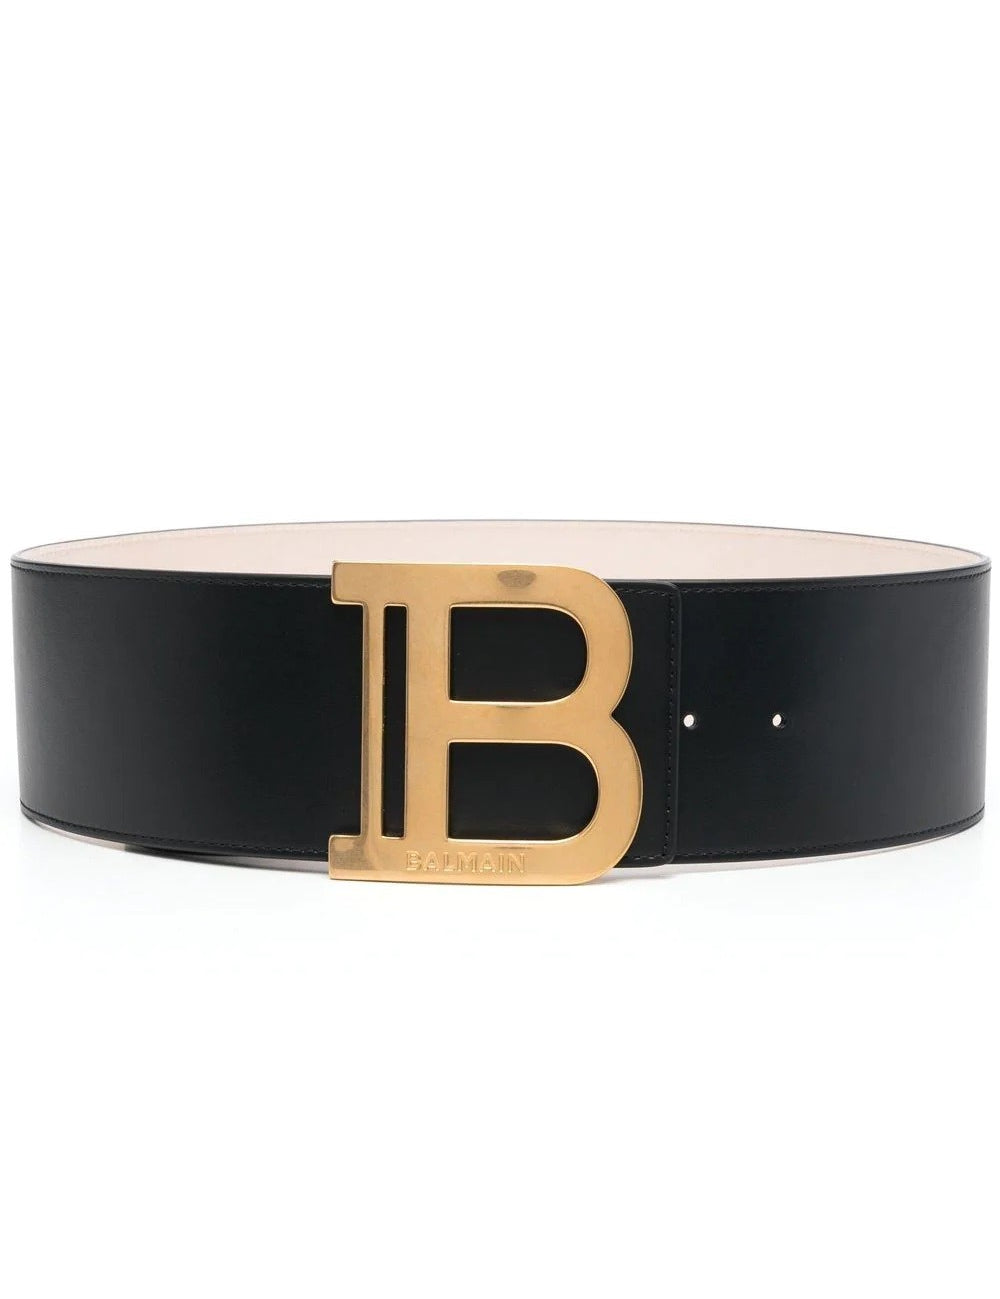 b-belt-75-cm.jpg